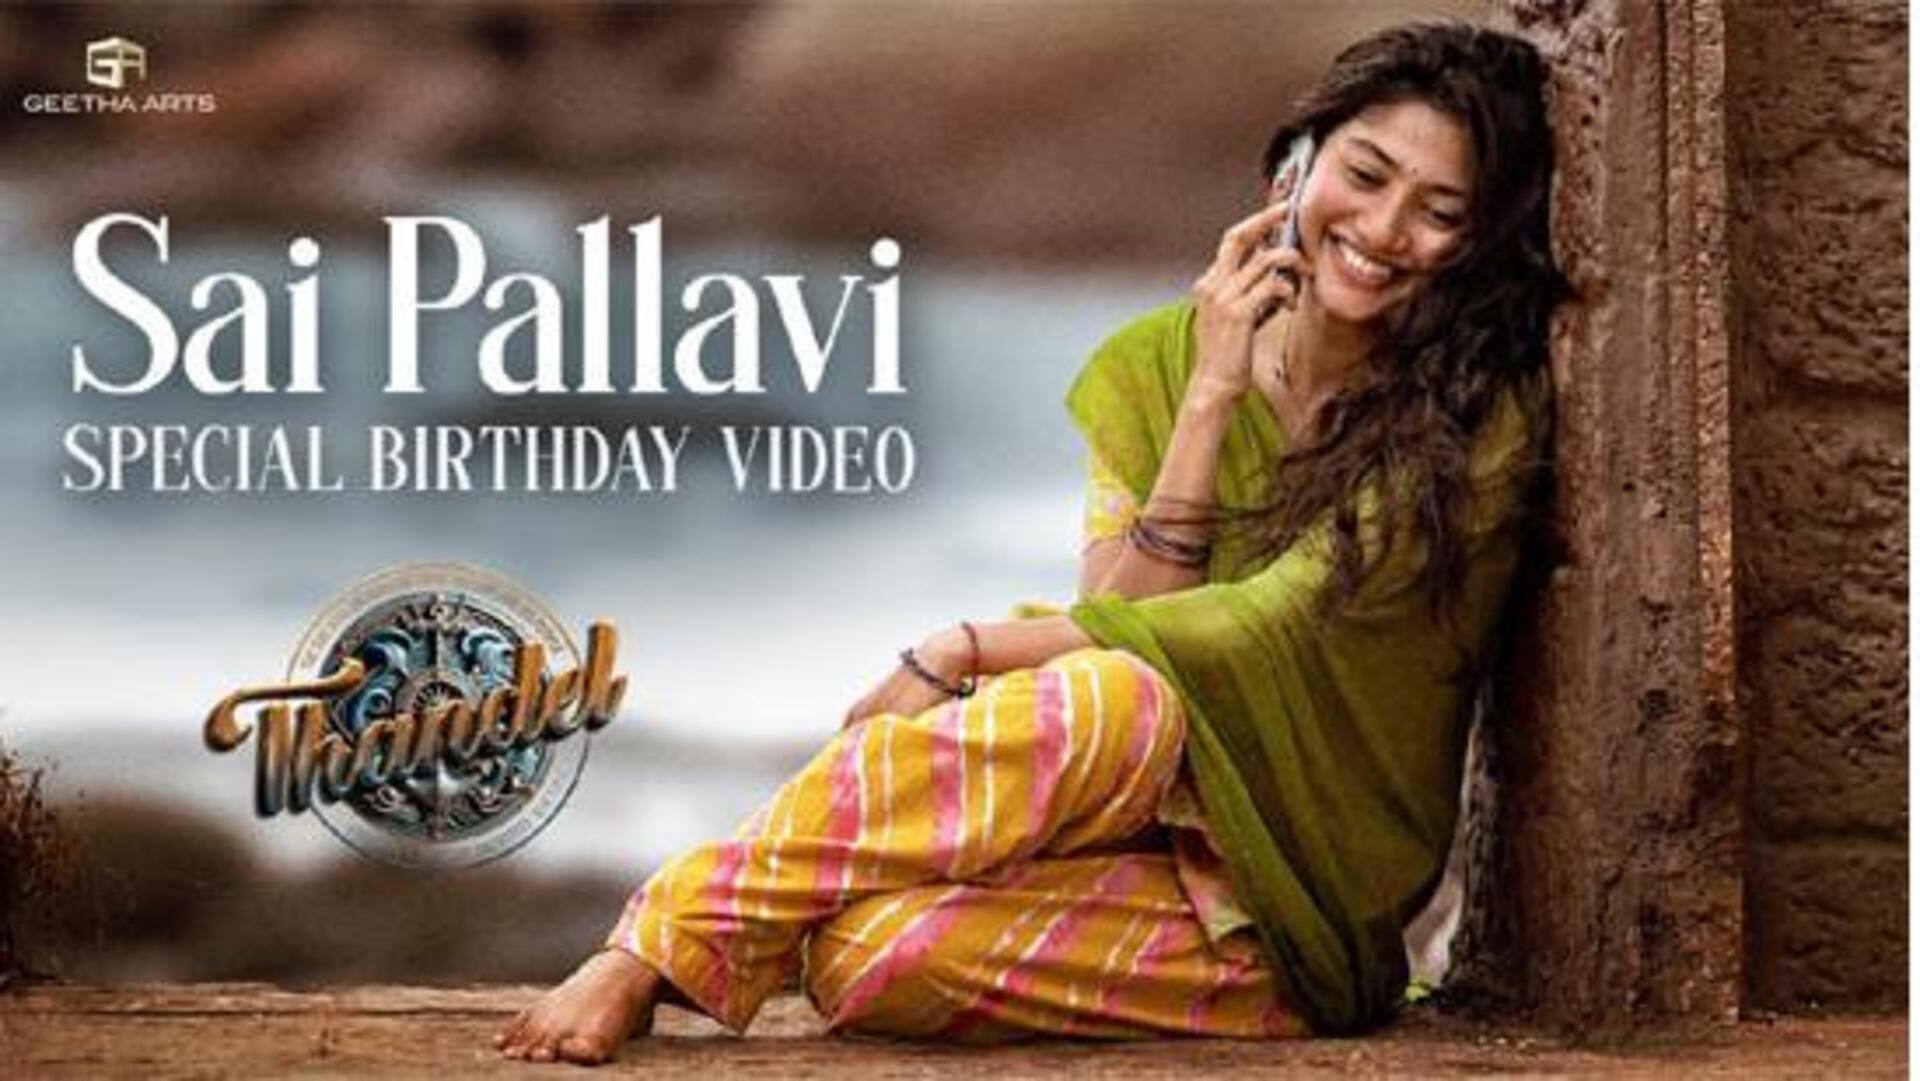 Sai Pallavi: తండేల్ టీమ్ నుండి సాయి పల్లవి బర్త్ డే స్పెషల్ వీడియో 